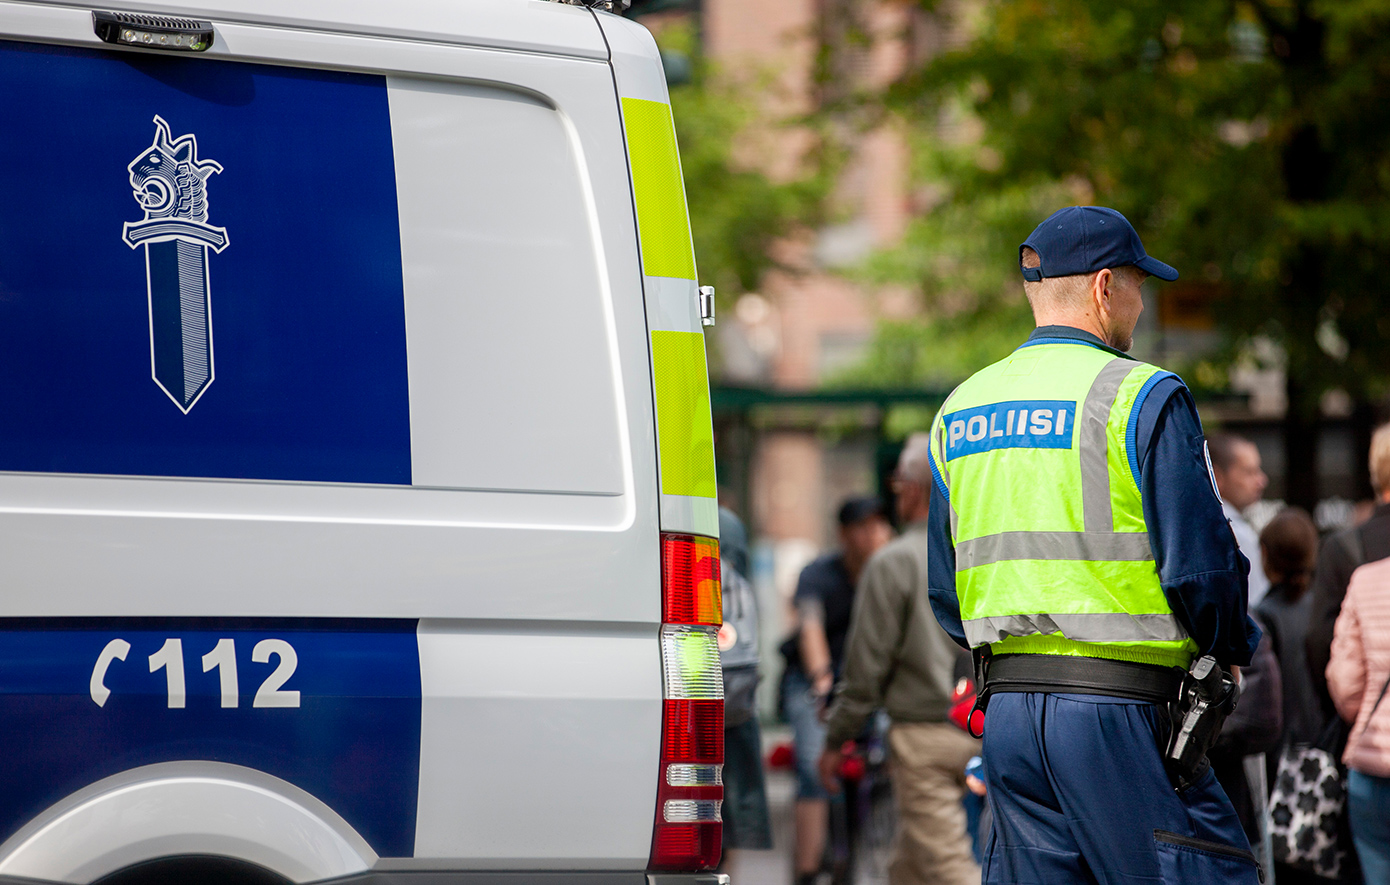 12χρονος συνελήφθη για τα πυρά σε σχολείο στη Φινλανδία, ένας 12χρονος νεκρός και άλλοι δύο σοβαρά τραυματίες